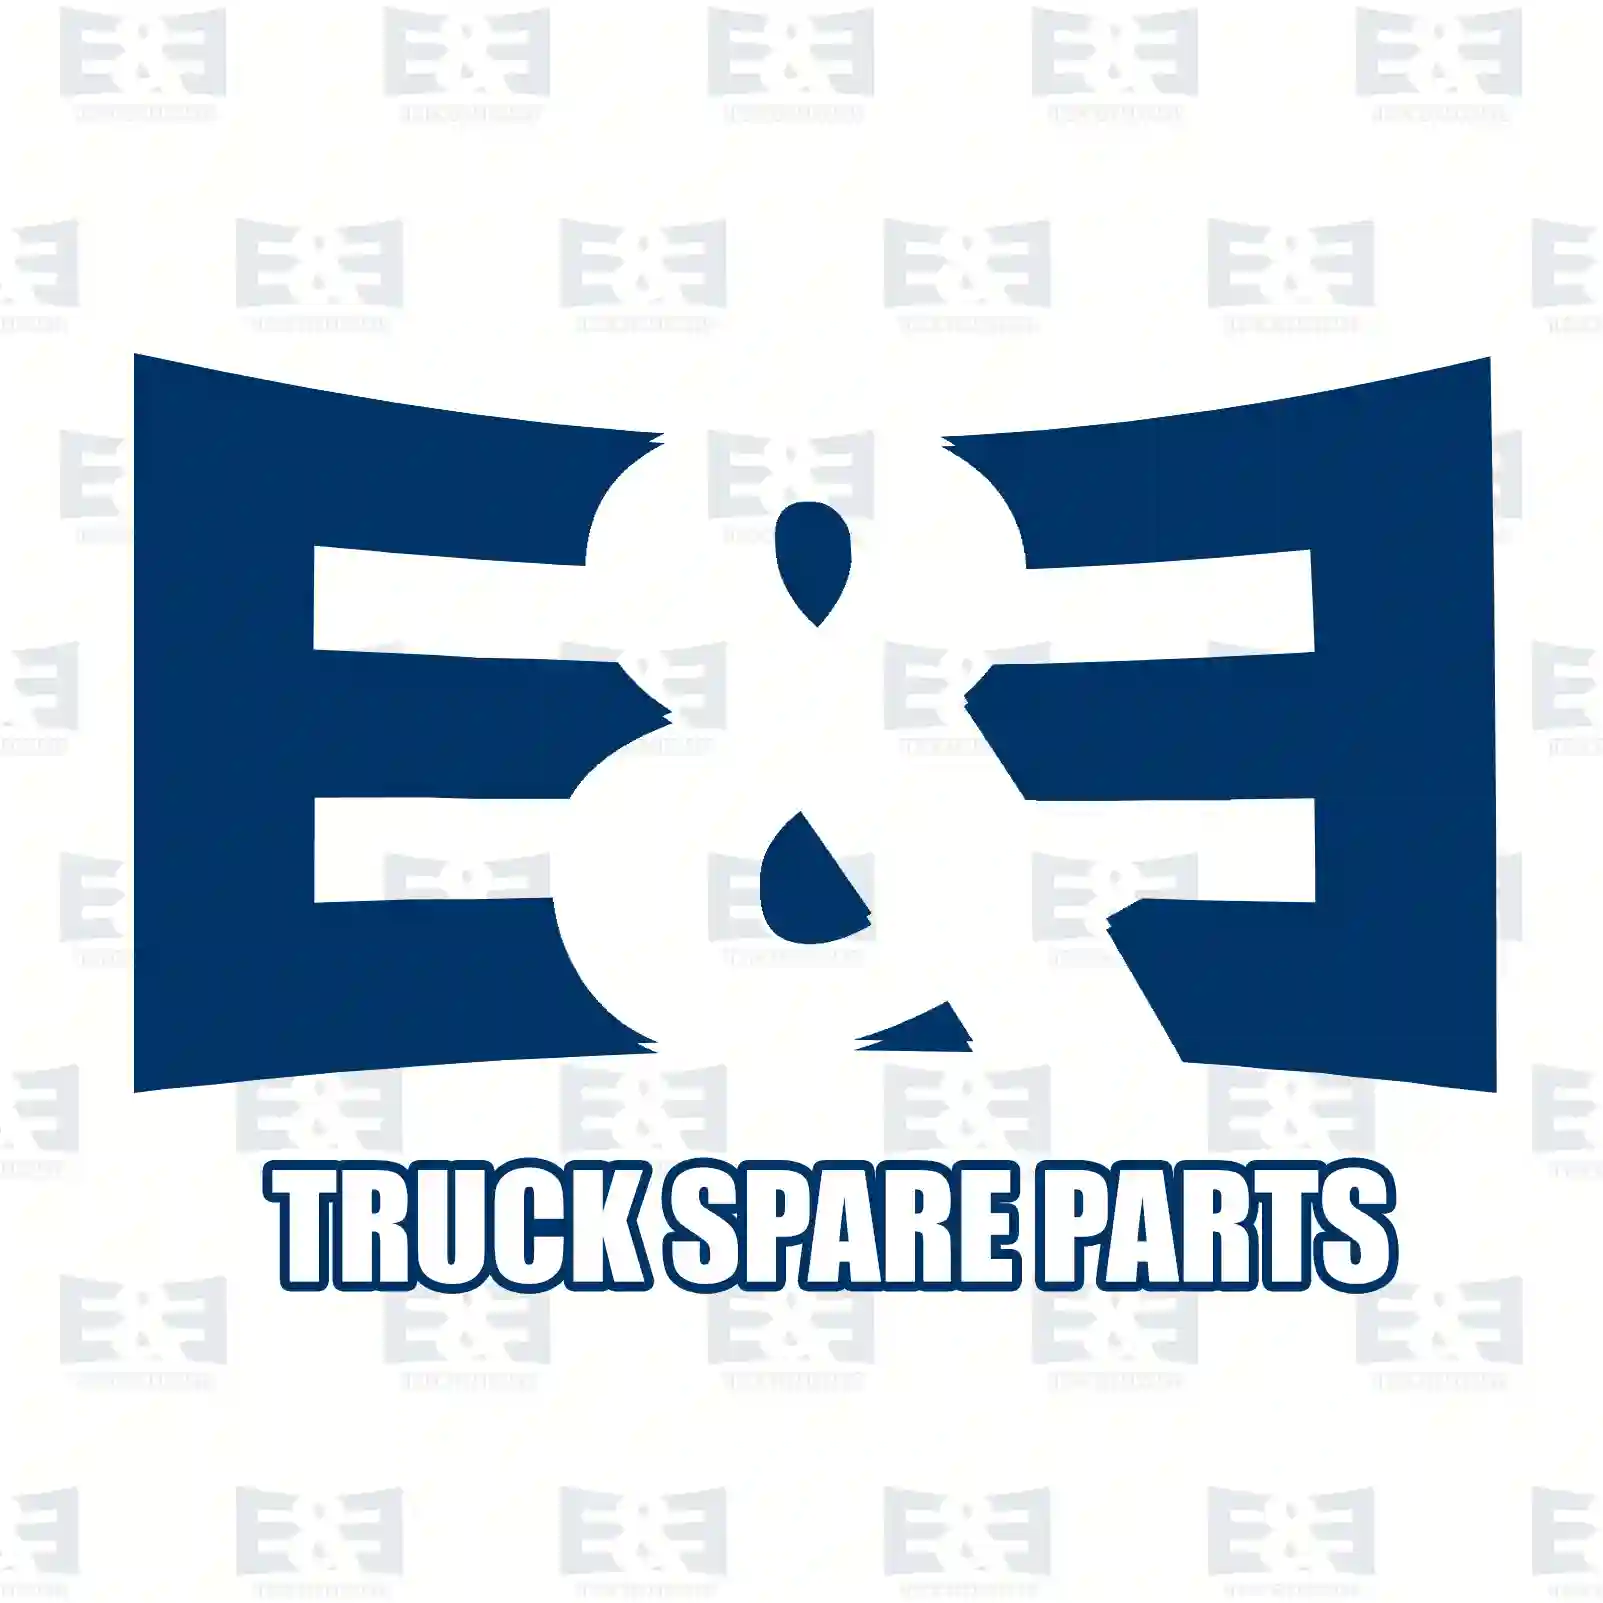 Wiper nozzle, 2E2289201, 2376409, ZG21330-0008 ||  2E2289201 E&E Truck Spare Parts | Truck Spare Parts, Auotomotive Spare Parts Wiper nozzle, 2E2289201, 2376409, ZG21330-0008 ||  2E2289201 E&E Truck Spare Parts | Truck Spare Parts, Auotomotive Spare Parts